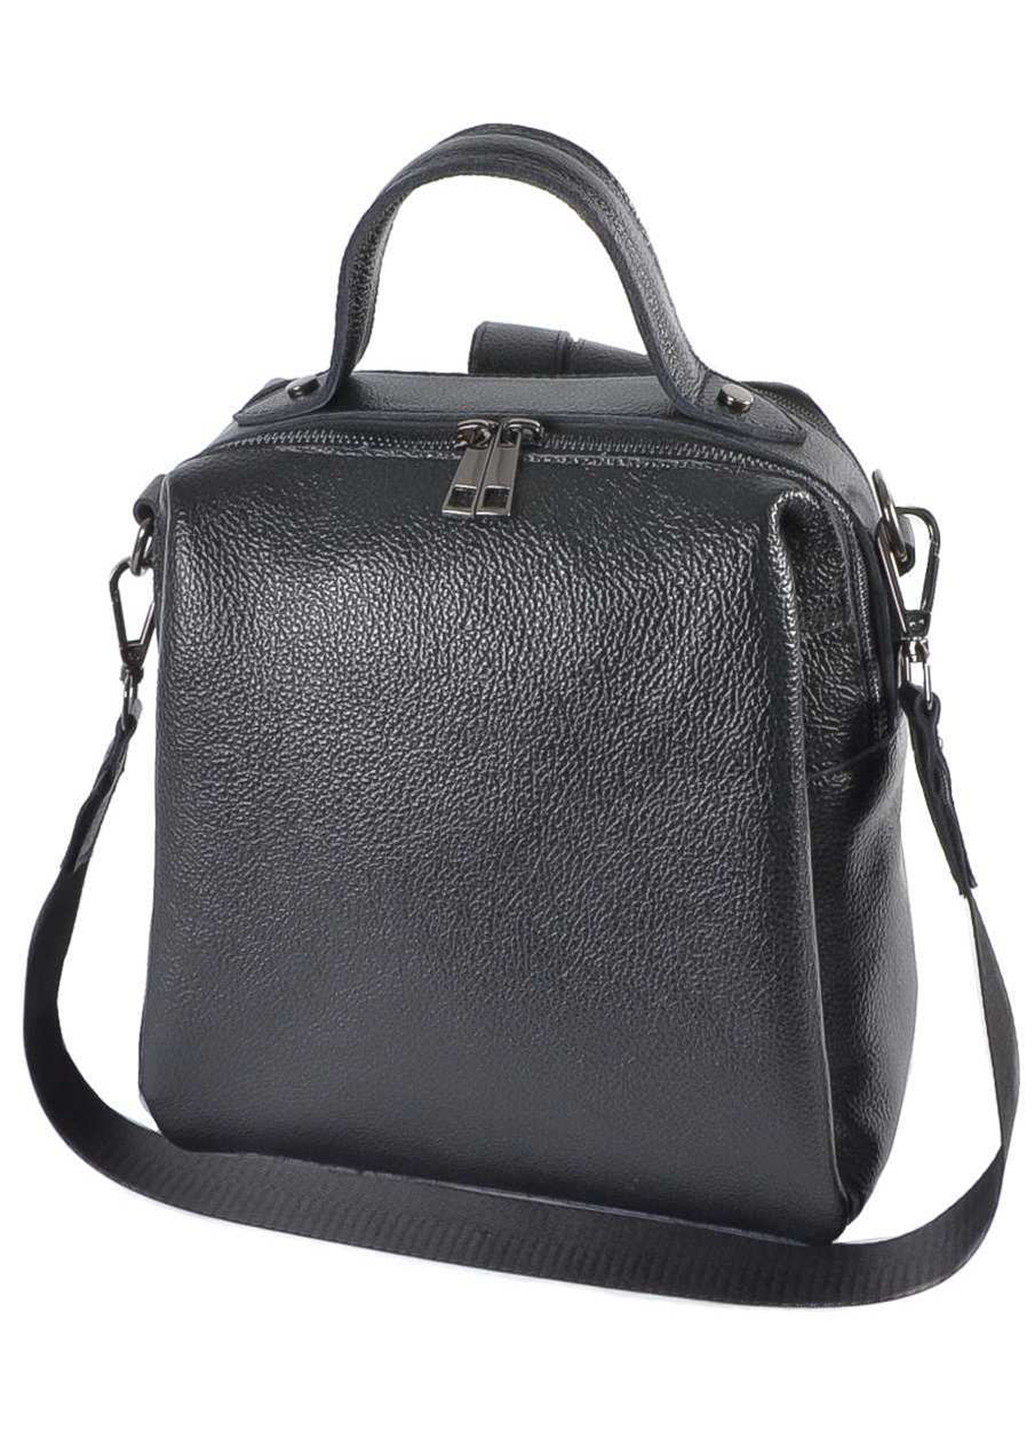 Женский кожаный рюкзак-сумка из натуральной кожи LucheRino 820 (276002807)